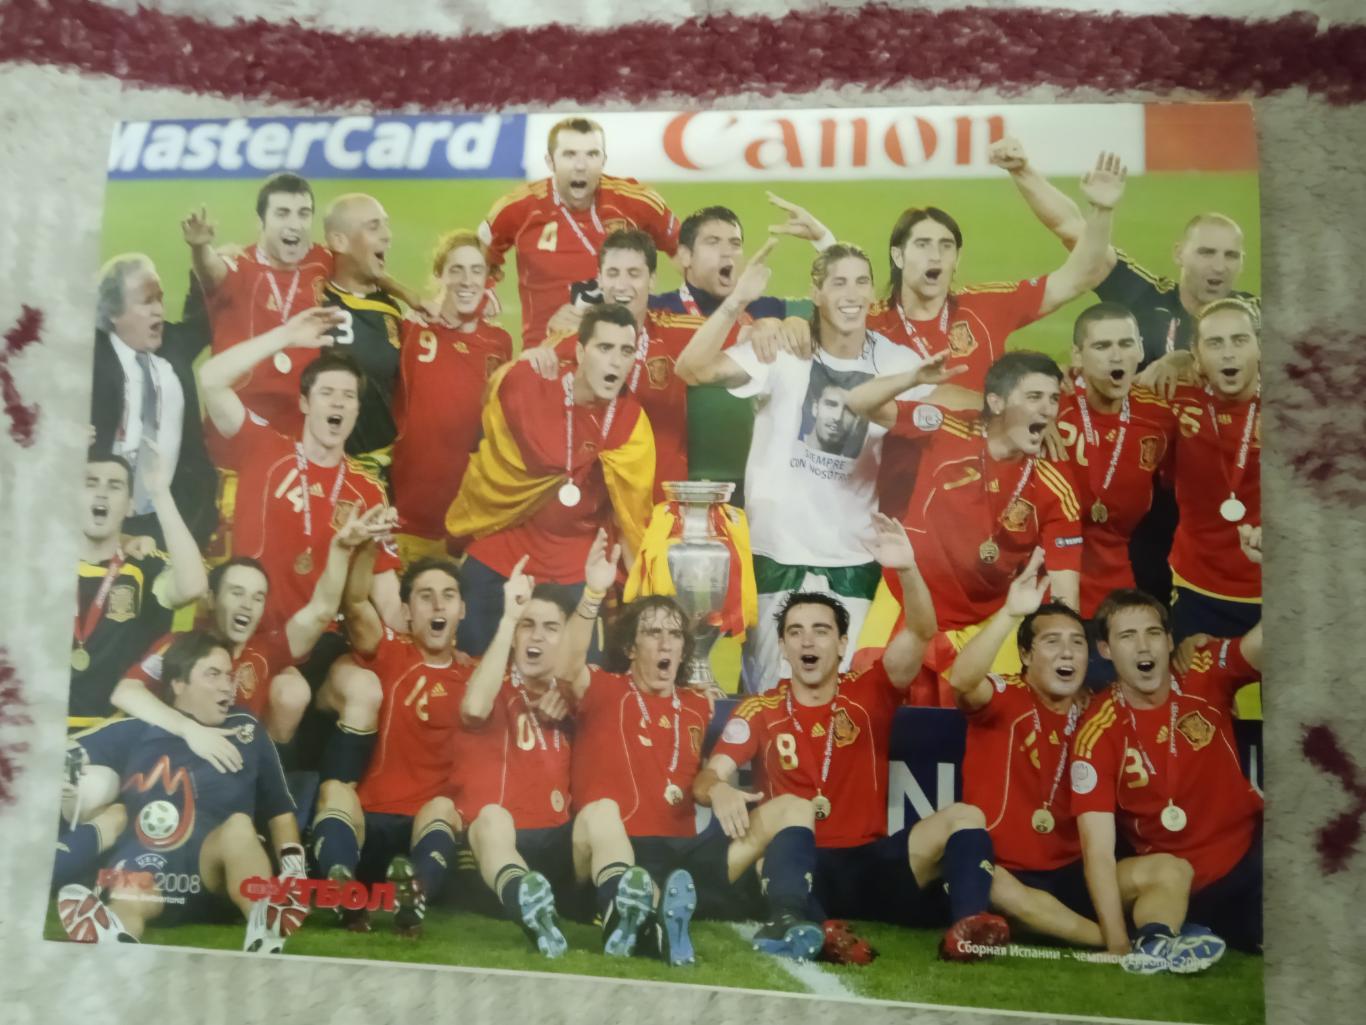 Журнал.Весь футбол июль 2008 г. (ЧЕ 2008 Австрия/Швейцария). 2